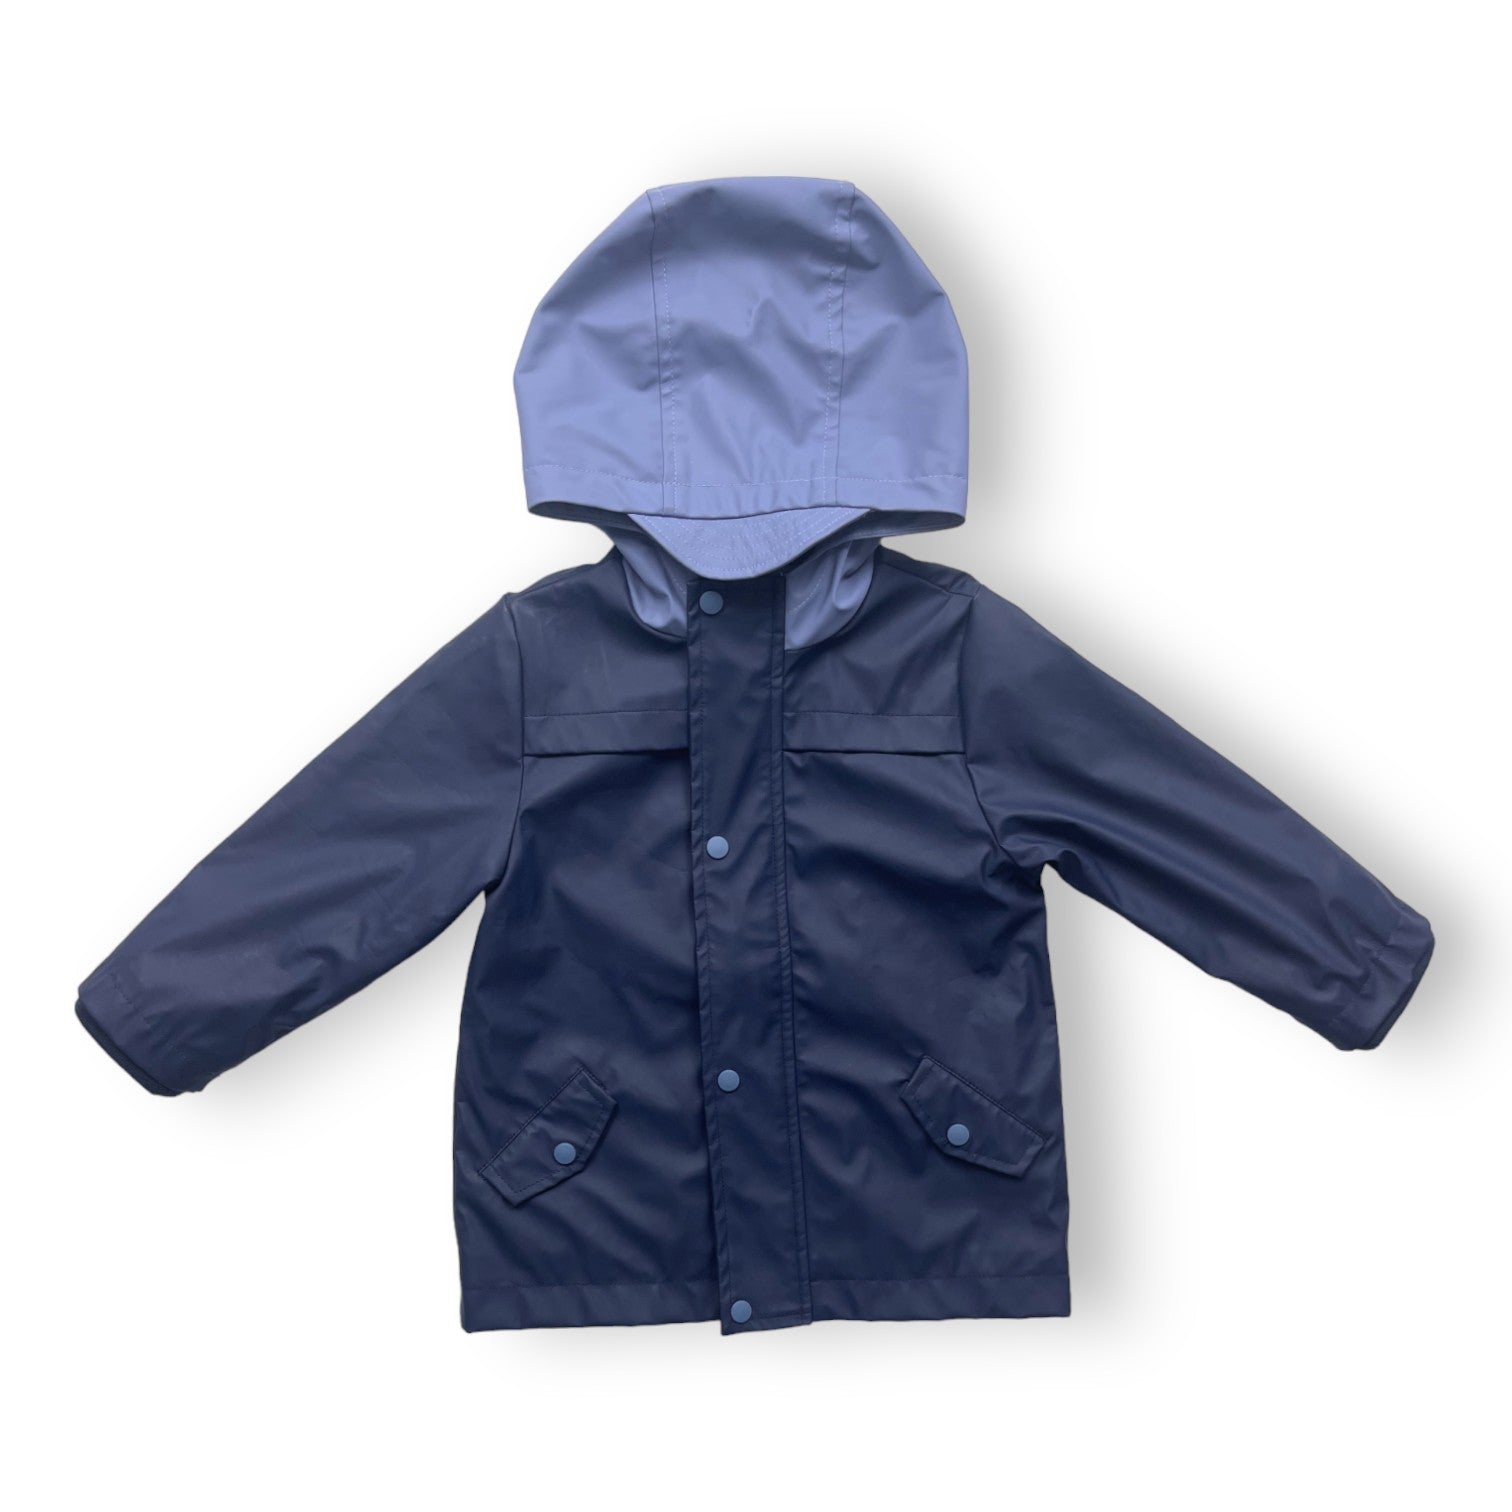 CYRILLUS - Manteau de pluie bleu marine - 2 ans